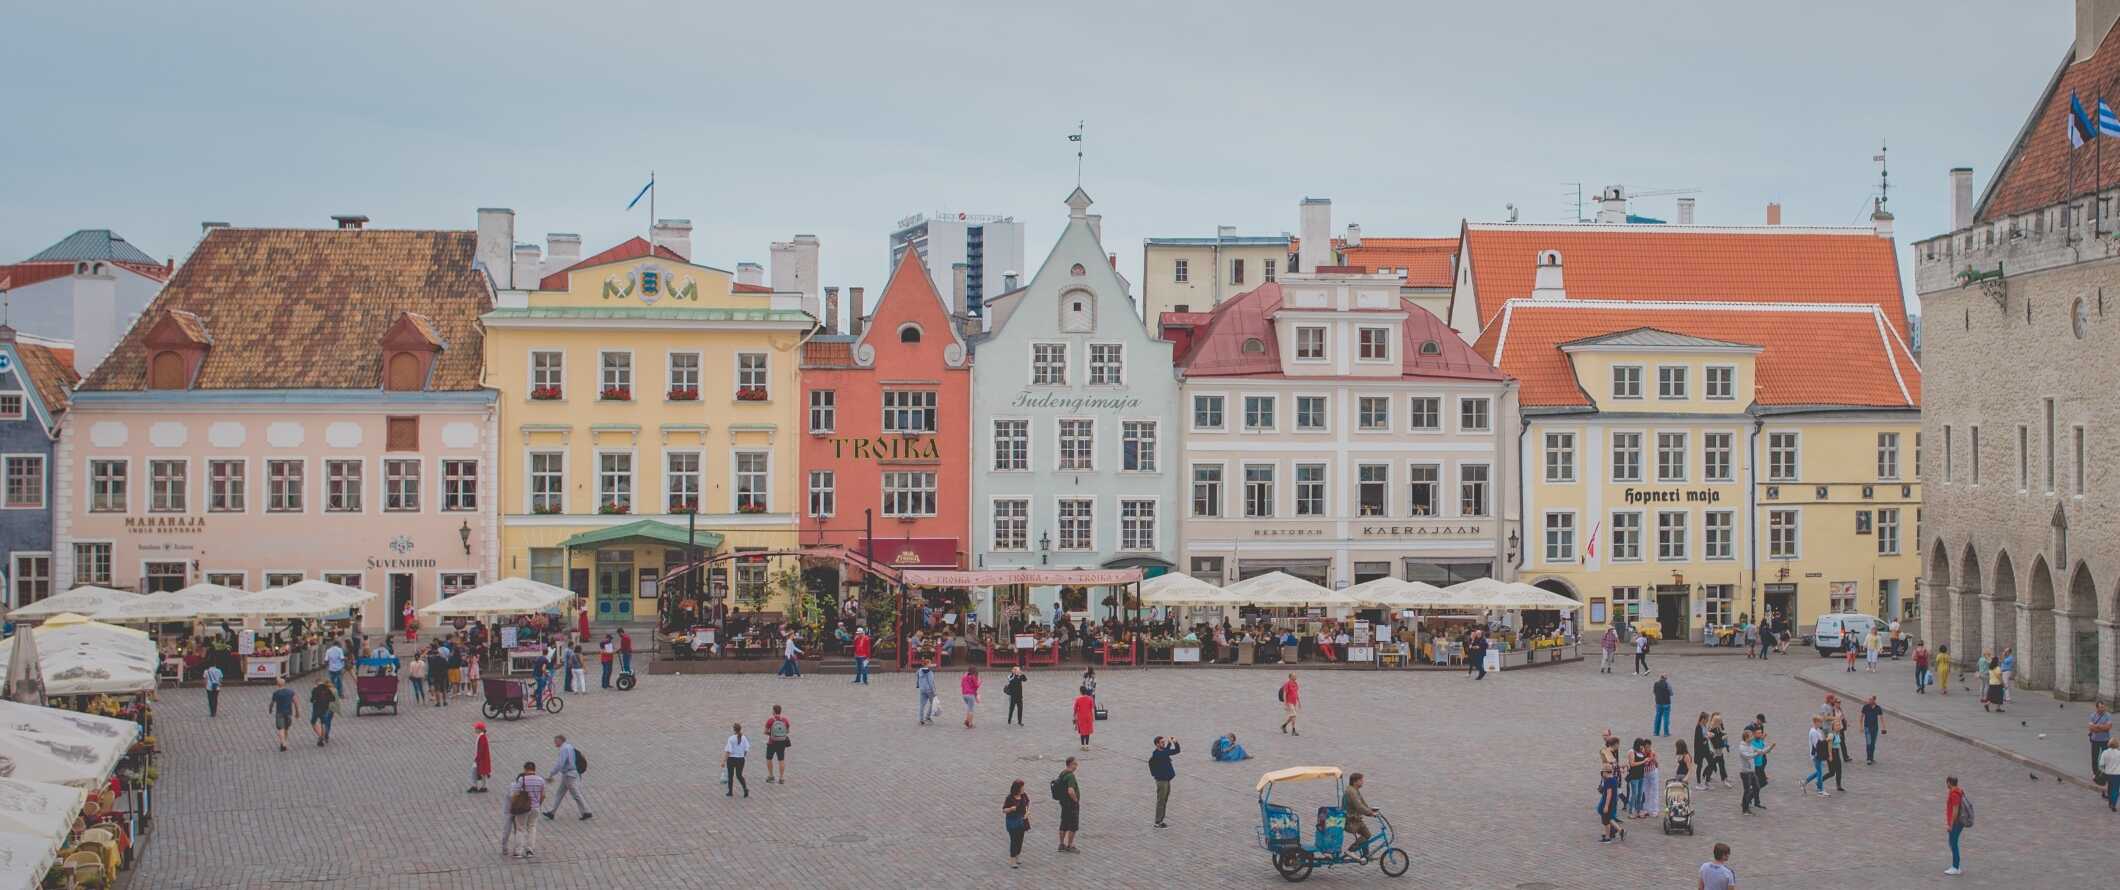 Praça Central com tons pastel na antiga cidade de Tallinn, Estônia